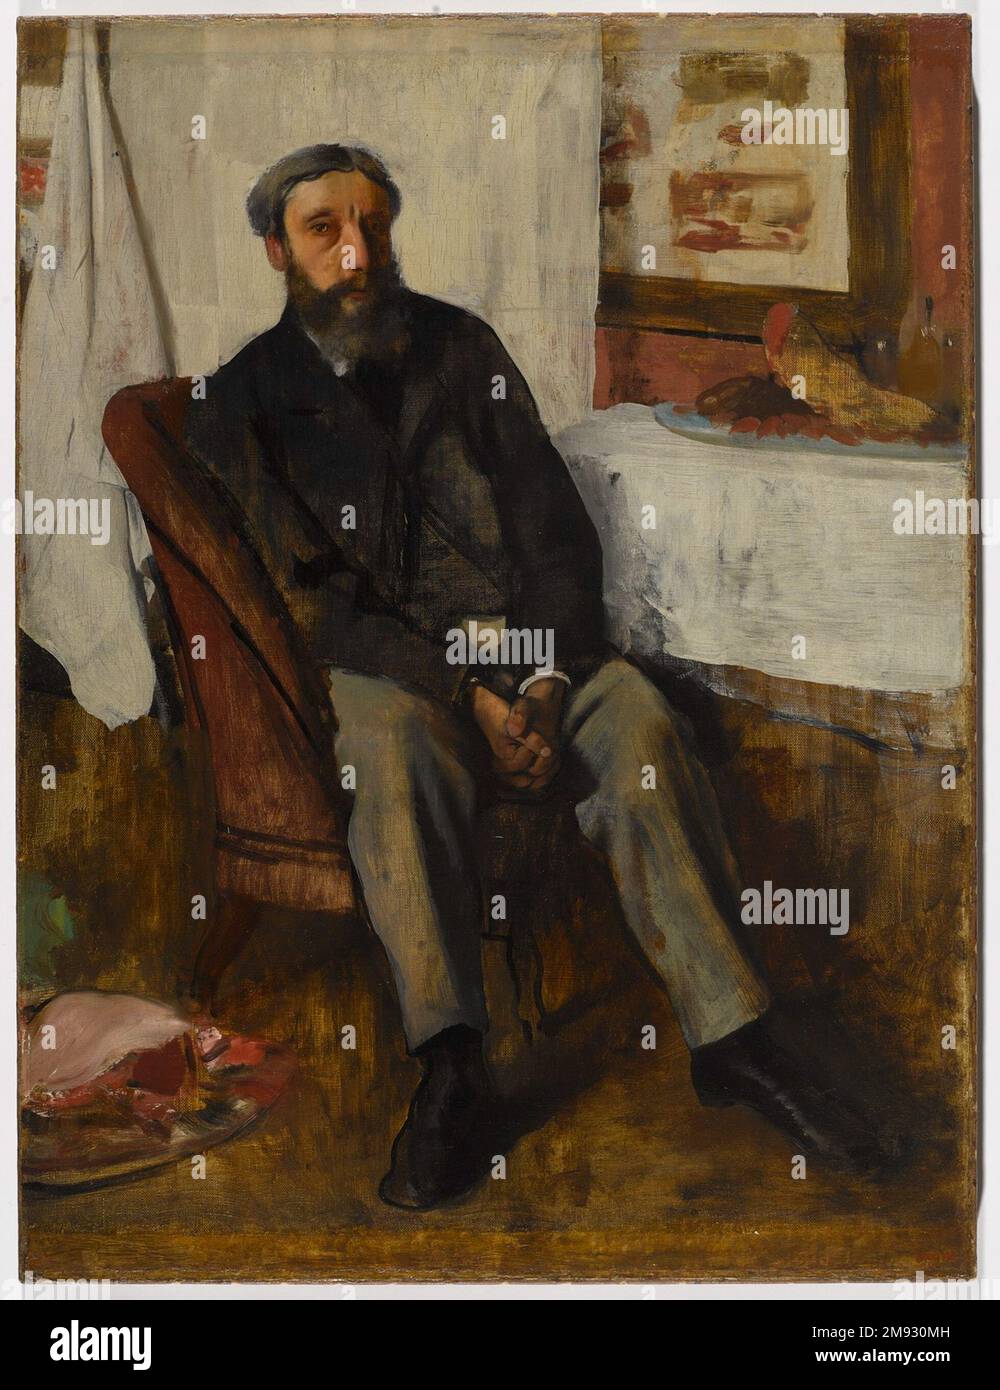 Portrait of a man (Portrait d'homme) Edgar Degas (Französisch, 1834-1917). Portrait of a man (Portrait d'homme), ca. 1866. Öl auf Leinwand, 34 x 25 1/2 Zoll (86,4 x 64,8 cm). In diesem rätselhaften Gemälde sitzt ein unidentifizierter Mann in moderner bürgerlicher Kleidung auf einem Stuhl inmitten von Fleischstücken. Eine Platte mit Wurst und einer blutigen, frisch geschnitzten Schweinekette liegt auf dem mit Stoff bedeckten Tisch, und was wie ein Rippenbraten aussieht, sitzt auf einer anderen Platte (oder ist es eine Künstlerpalette?) Auf den Boden. In der Mitte zwischen diesen beiden Platten toten Tierfleisches befinden sich die gefalteten Hände des Mannes, die die melancholische Wirkung verstärken Stockfoto